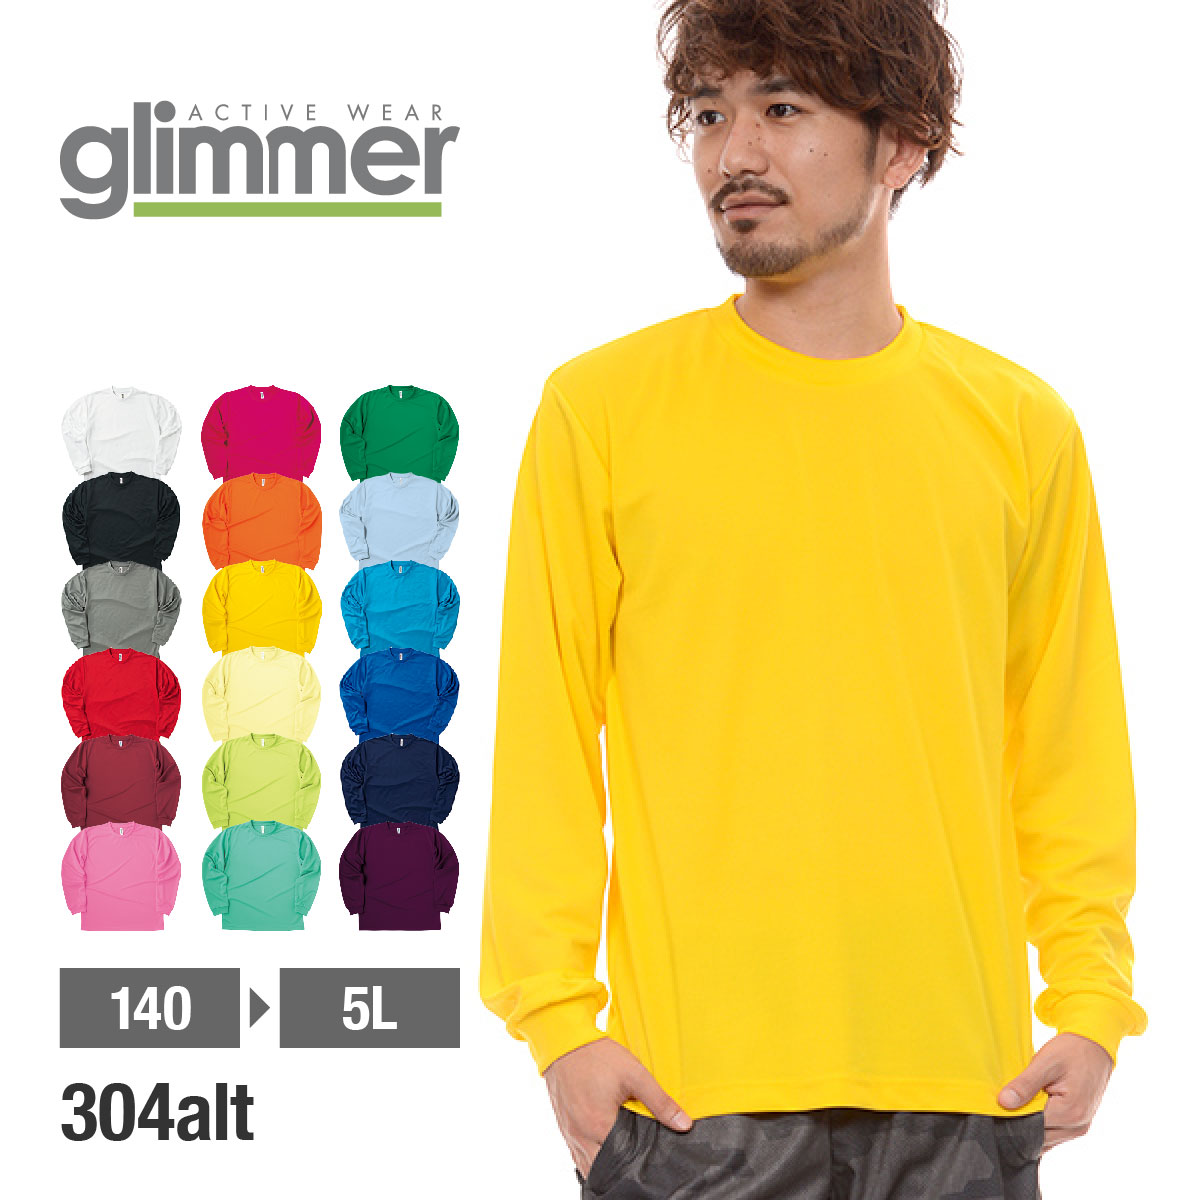 ドライ Tシャツ メンズ 長袖 無地 大きいサイズ 4L-7L 速乾 tシャツ GLIMMER 値下げ ロンT 吸汗 グリマー 00304-ALT 新品 送料無料 ユニフォーム スポーツ ドライロングスリーブTシャツ uvカット ロンティー